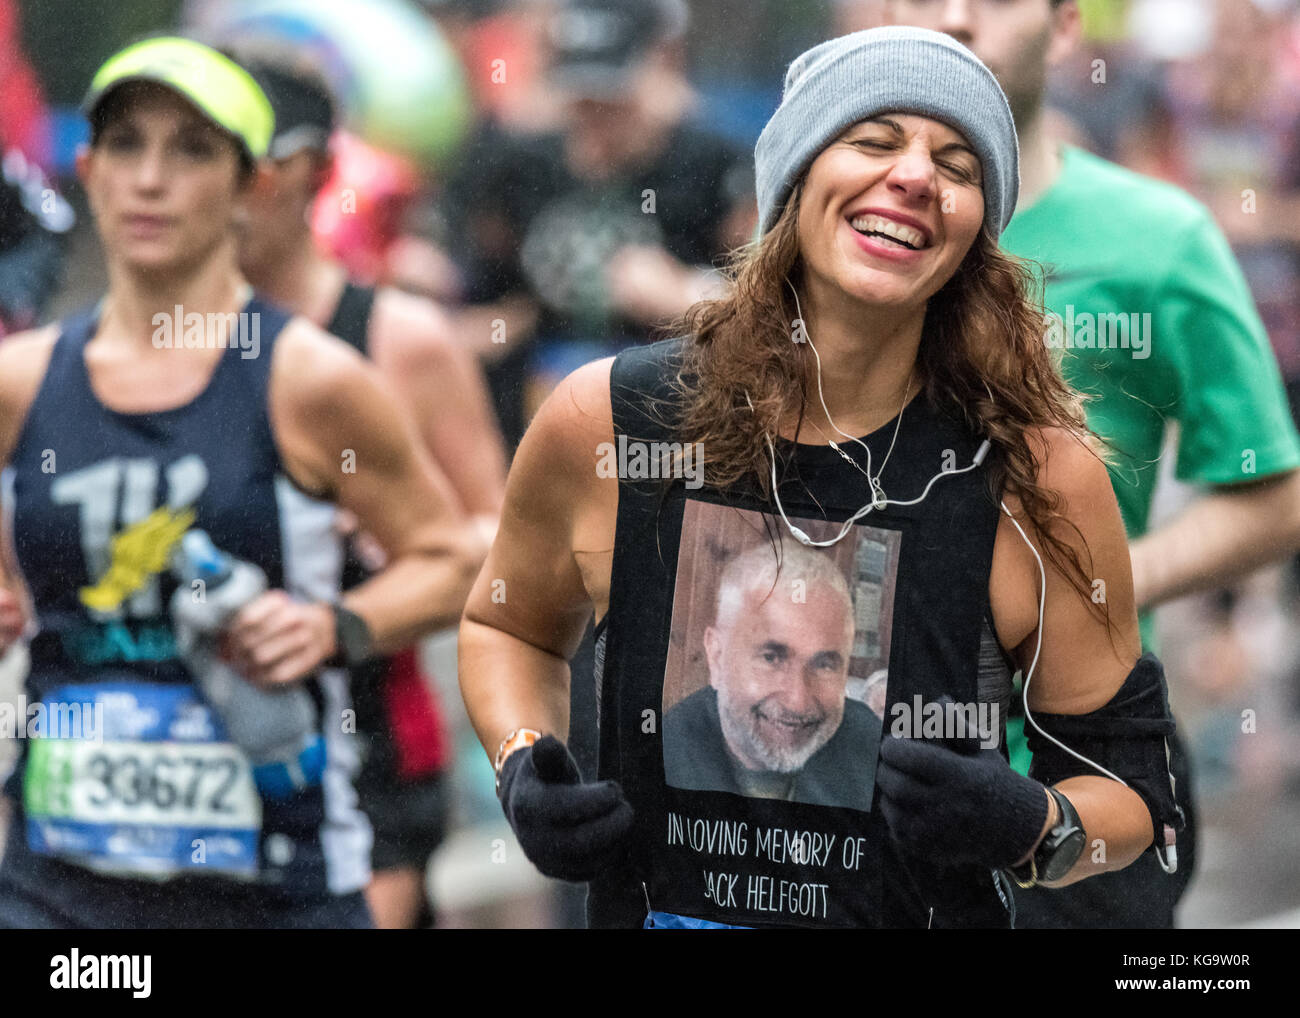 New York, États-Unis. 5 novembre 2017. Les coureurs de cinquième Avenue pendant le marathon de New York City. Crédit: Enrique Shore/Alay Live News Banque D'Images